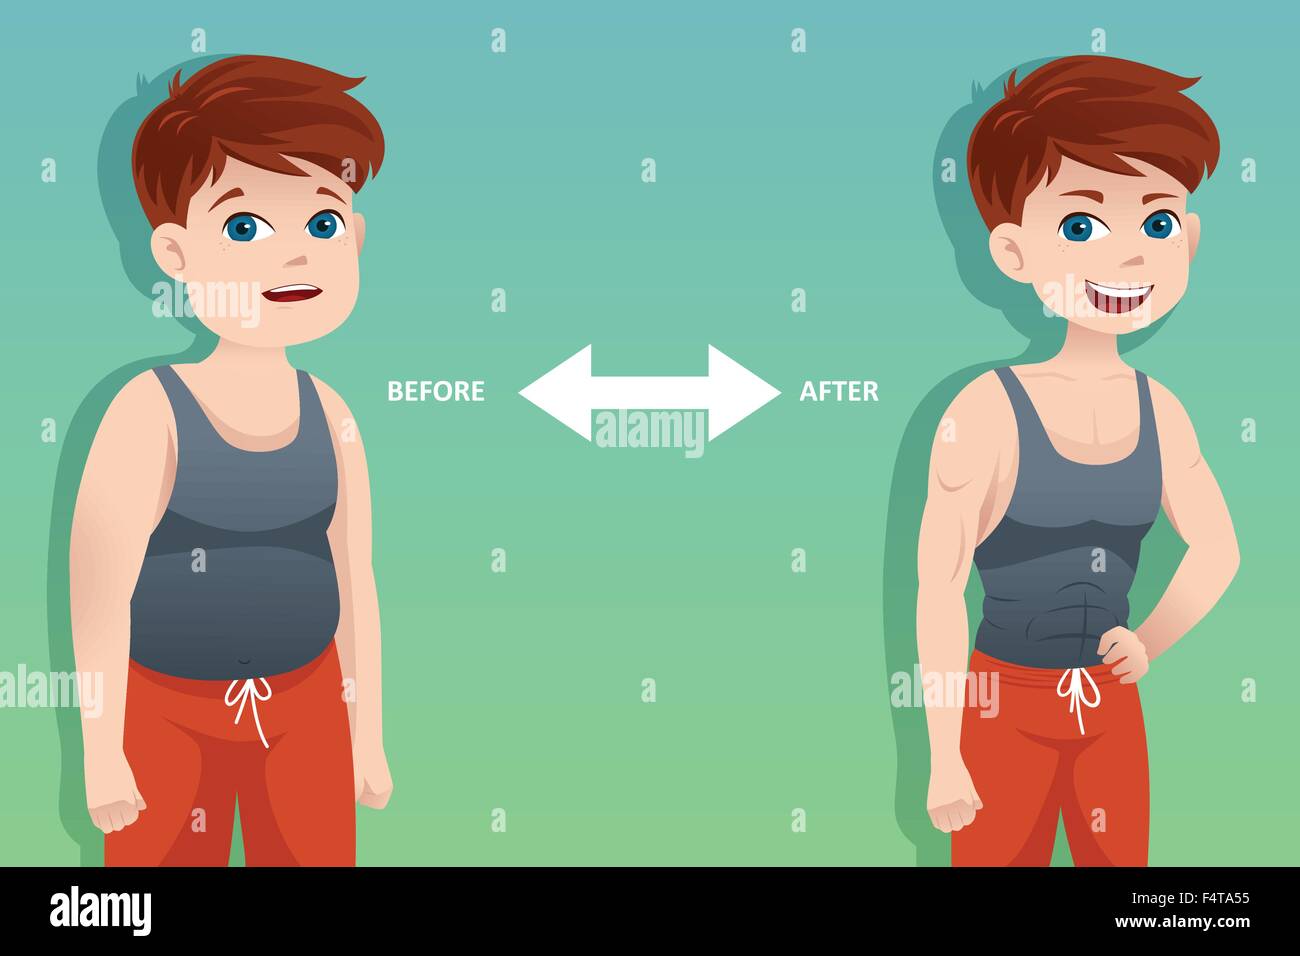 Eine Vektor-Illustration des Gewicht-Verlust-Konzept eines Mannes vor und nach der Diät Stock Vektor